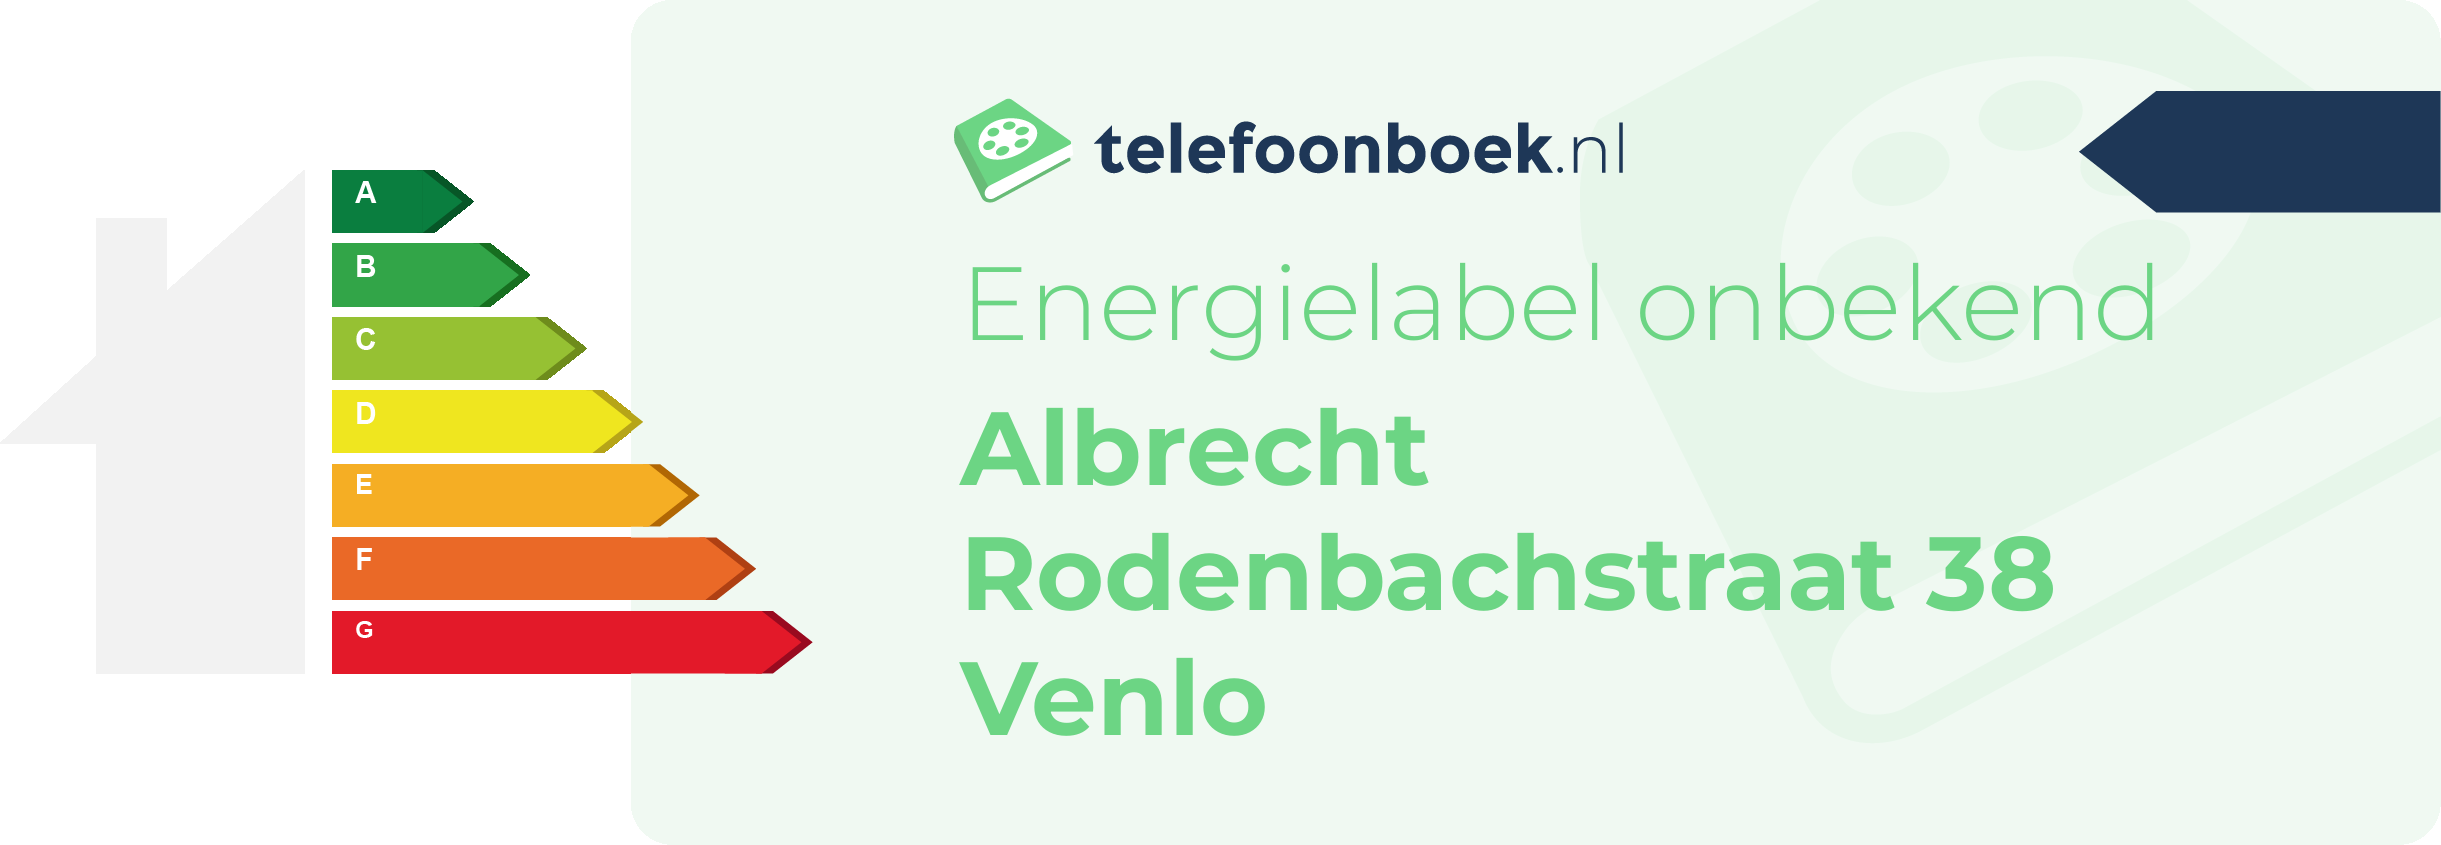 Energielabel Albrecht Rodenbachstraat 38 Venlo